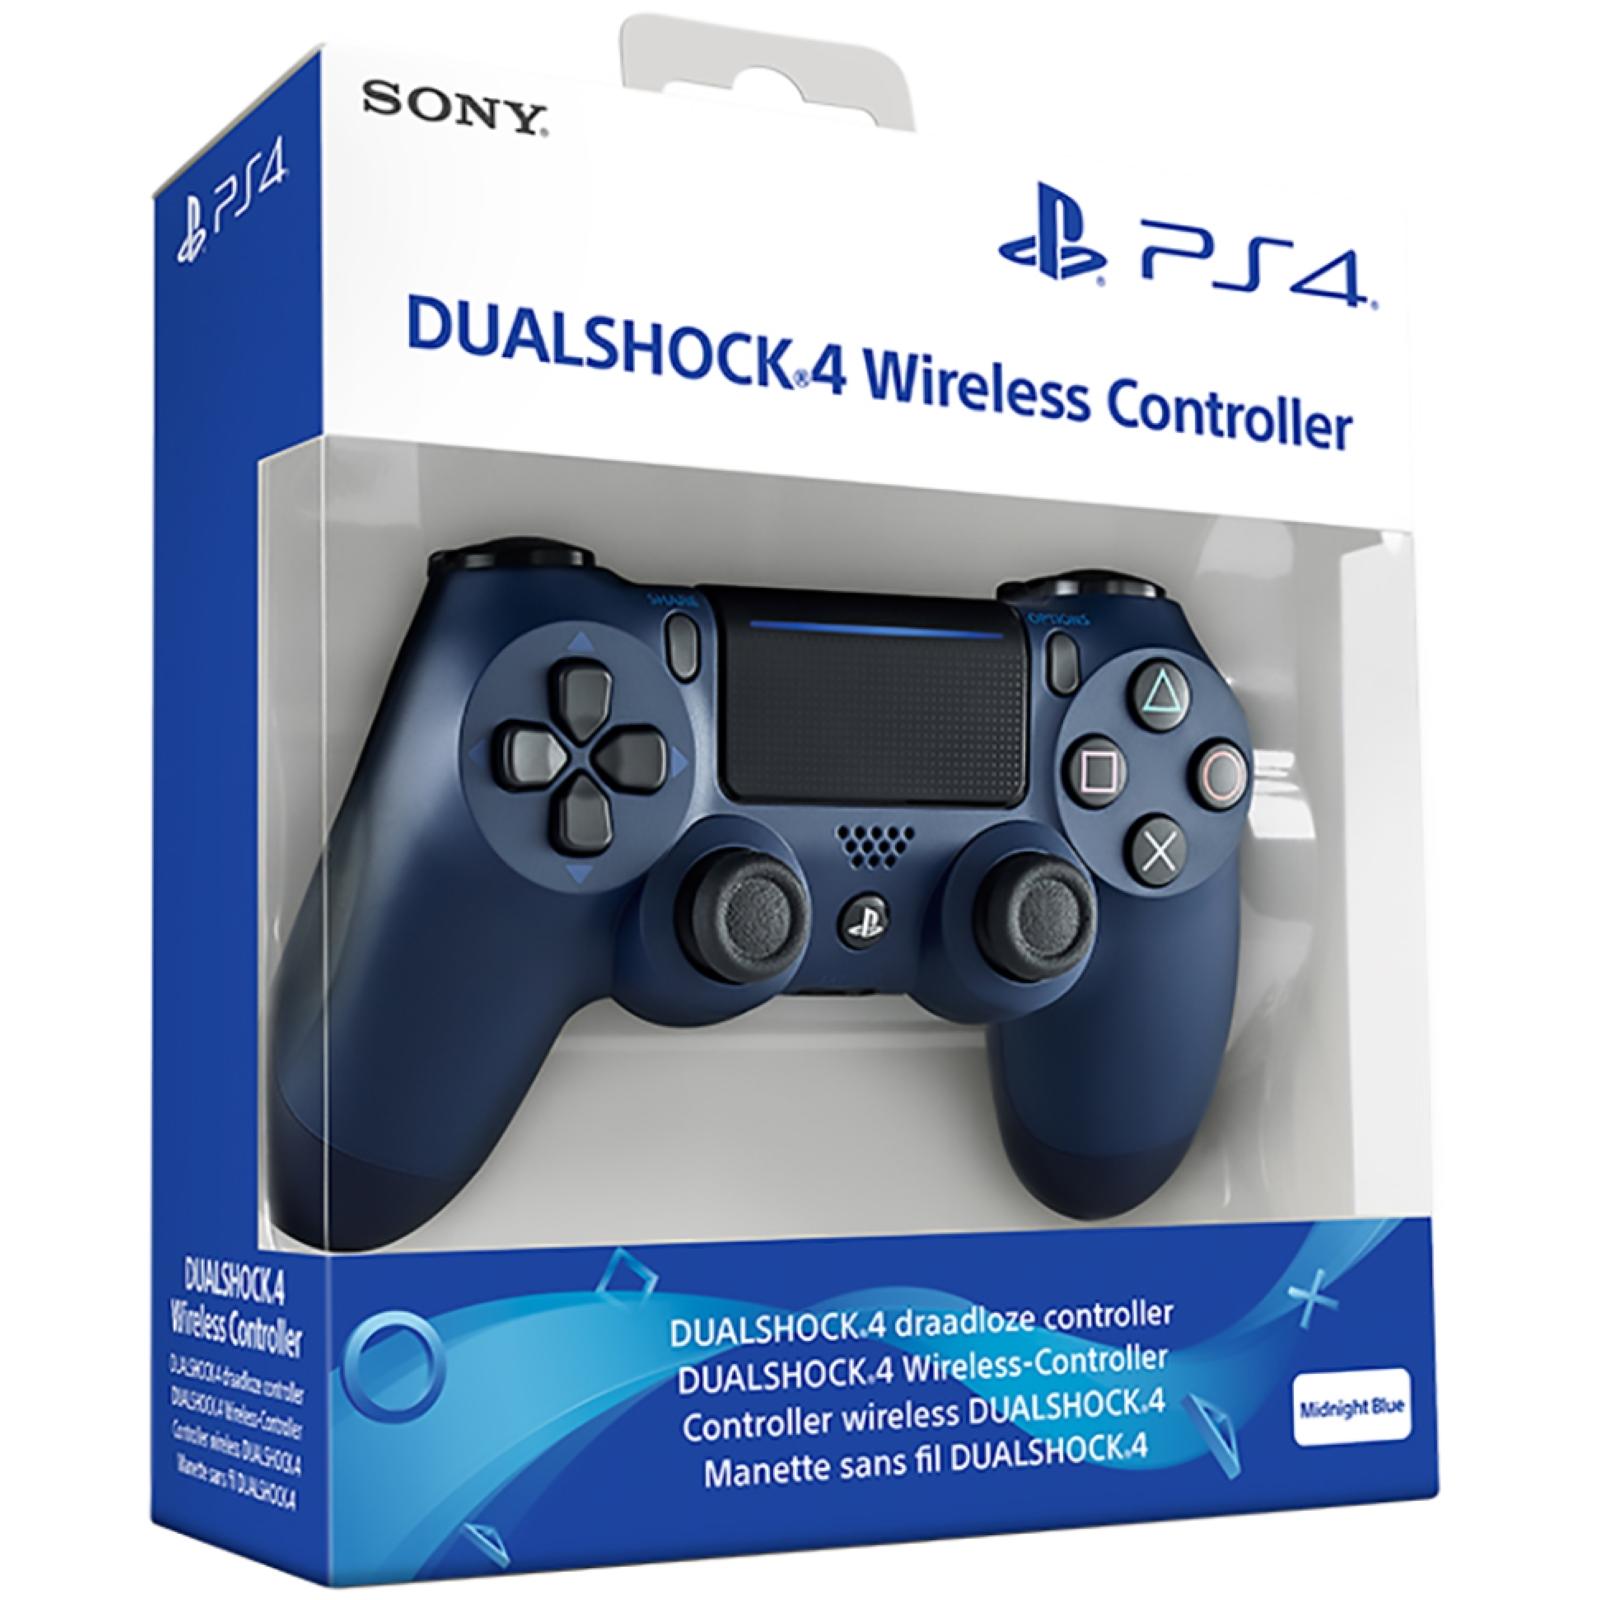 Sony - Sony Dualshock 4 Mando Controller v2 - Negro, Rojo, Azul, Camuflaje para PlayStation 4, PS4, Original, Precintado, Dual Shock